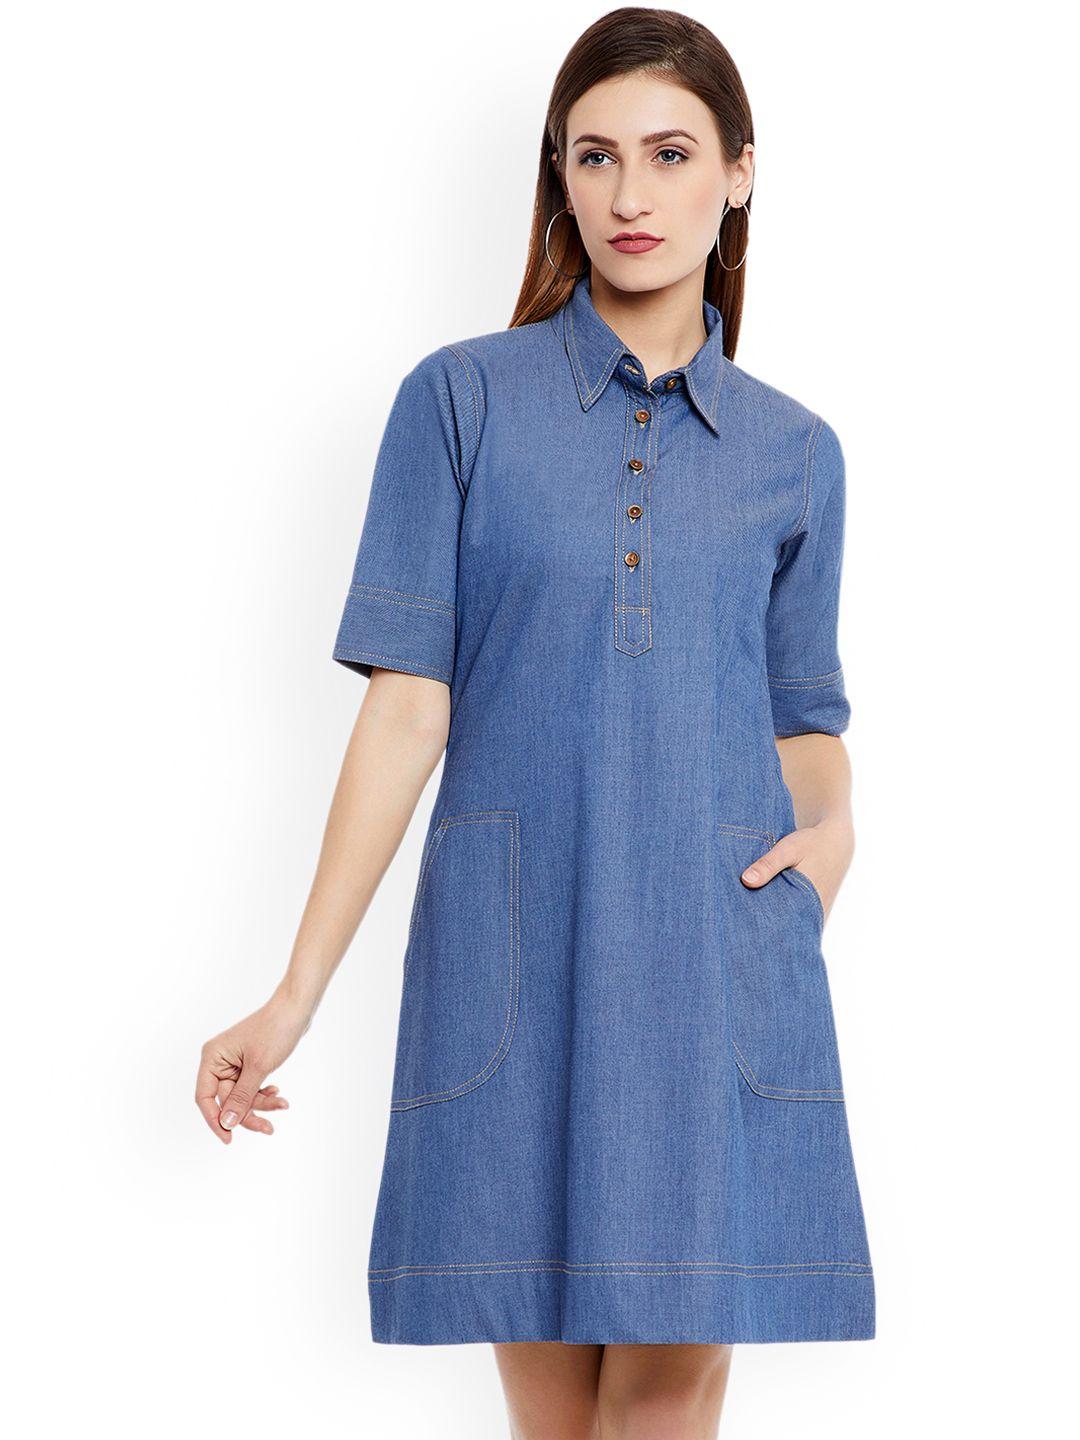 imfashini women blue solid shirt dress